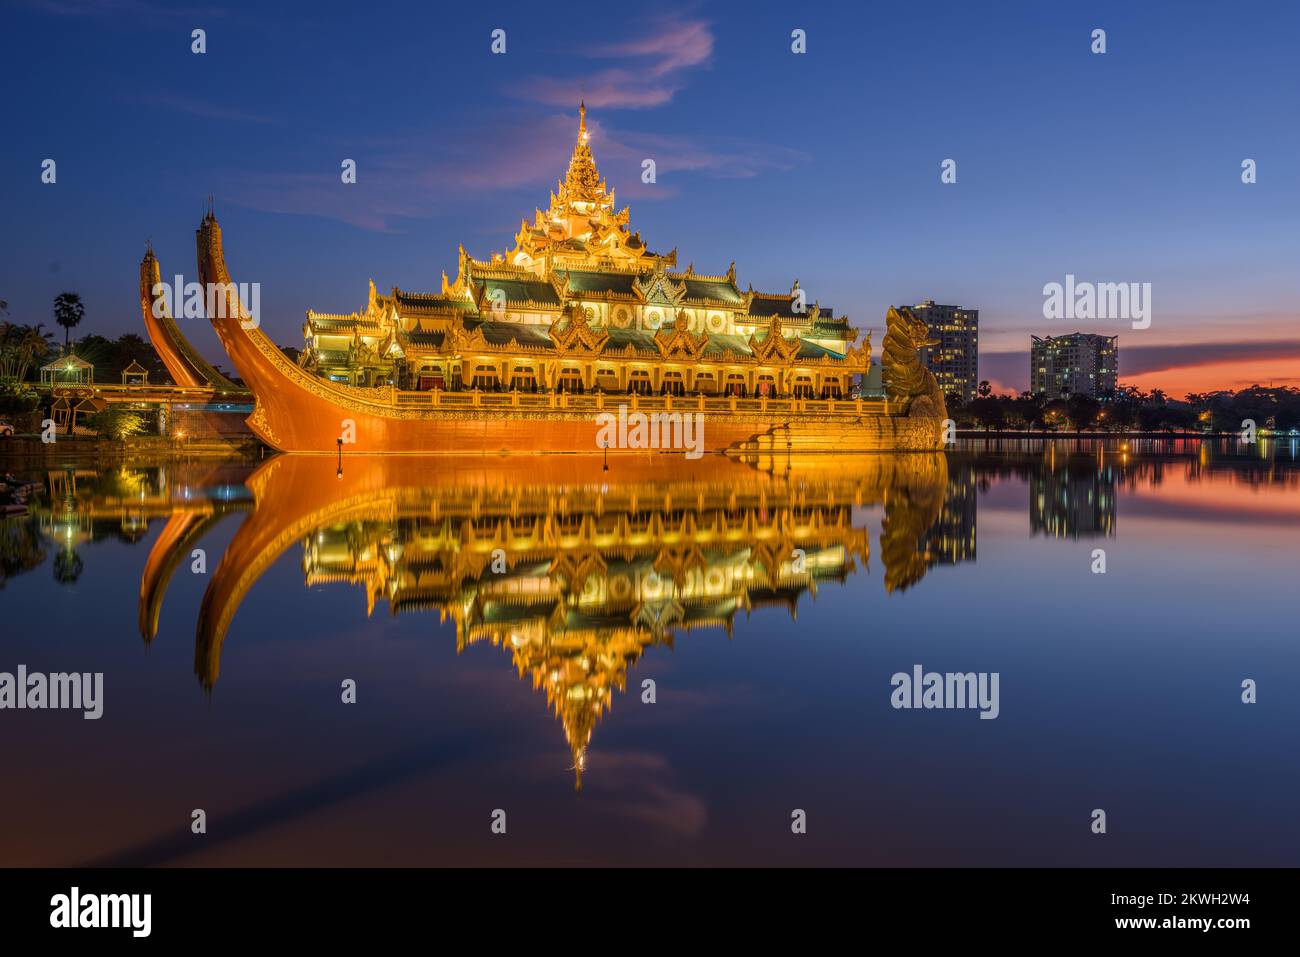 Yangon, Myanmar im Karaweik Palace in Kandawgyi Royal Lake. Stockfoto